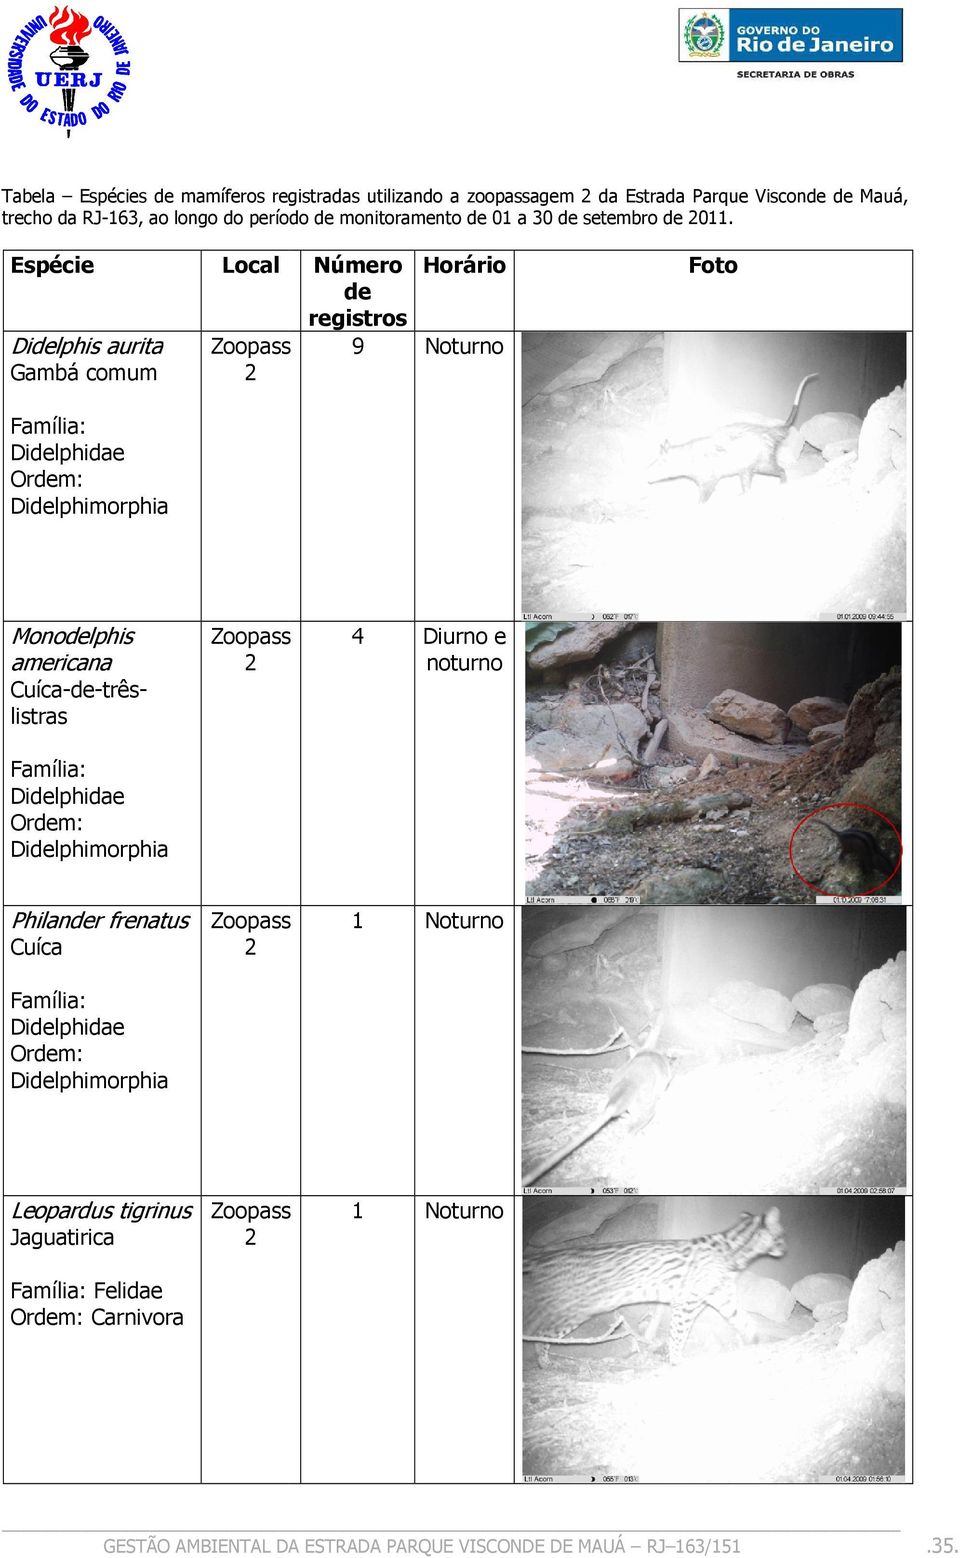 Espécie Didelphis aurita Gambá comum Local Número Horário de registros Zoopass 9 Noturno Foto Didelphidae Didelphimorphia Monodelphis americana Zoopass 4